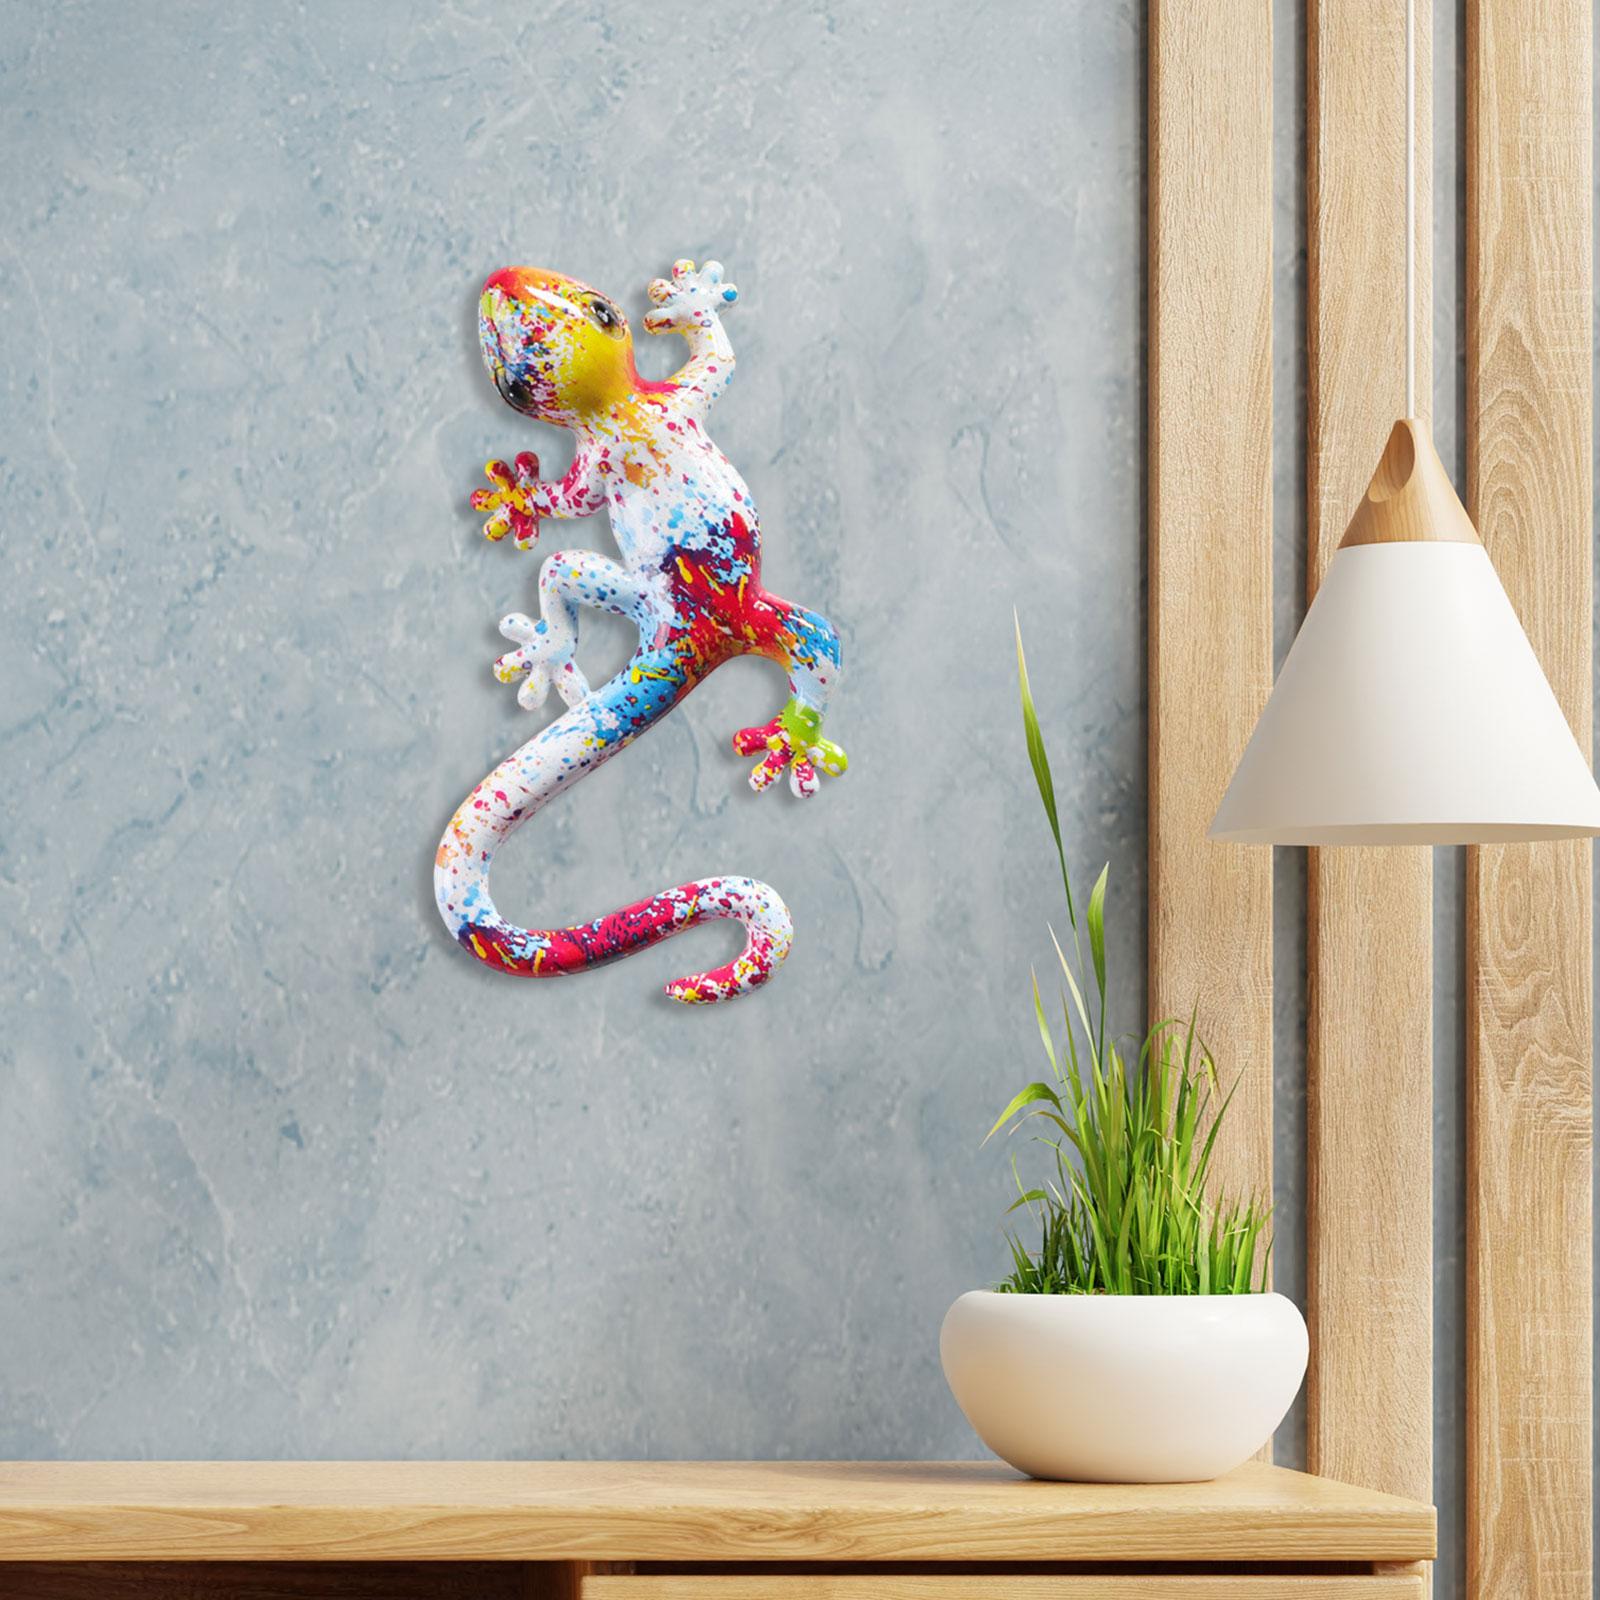 Gecko Wall Art Decor Gecko Wall Sculpture for Home Living Room Indoor Hook 14x8.5x2.5cm